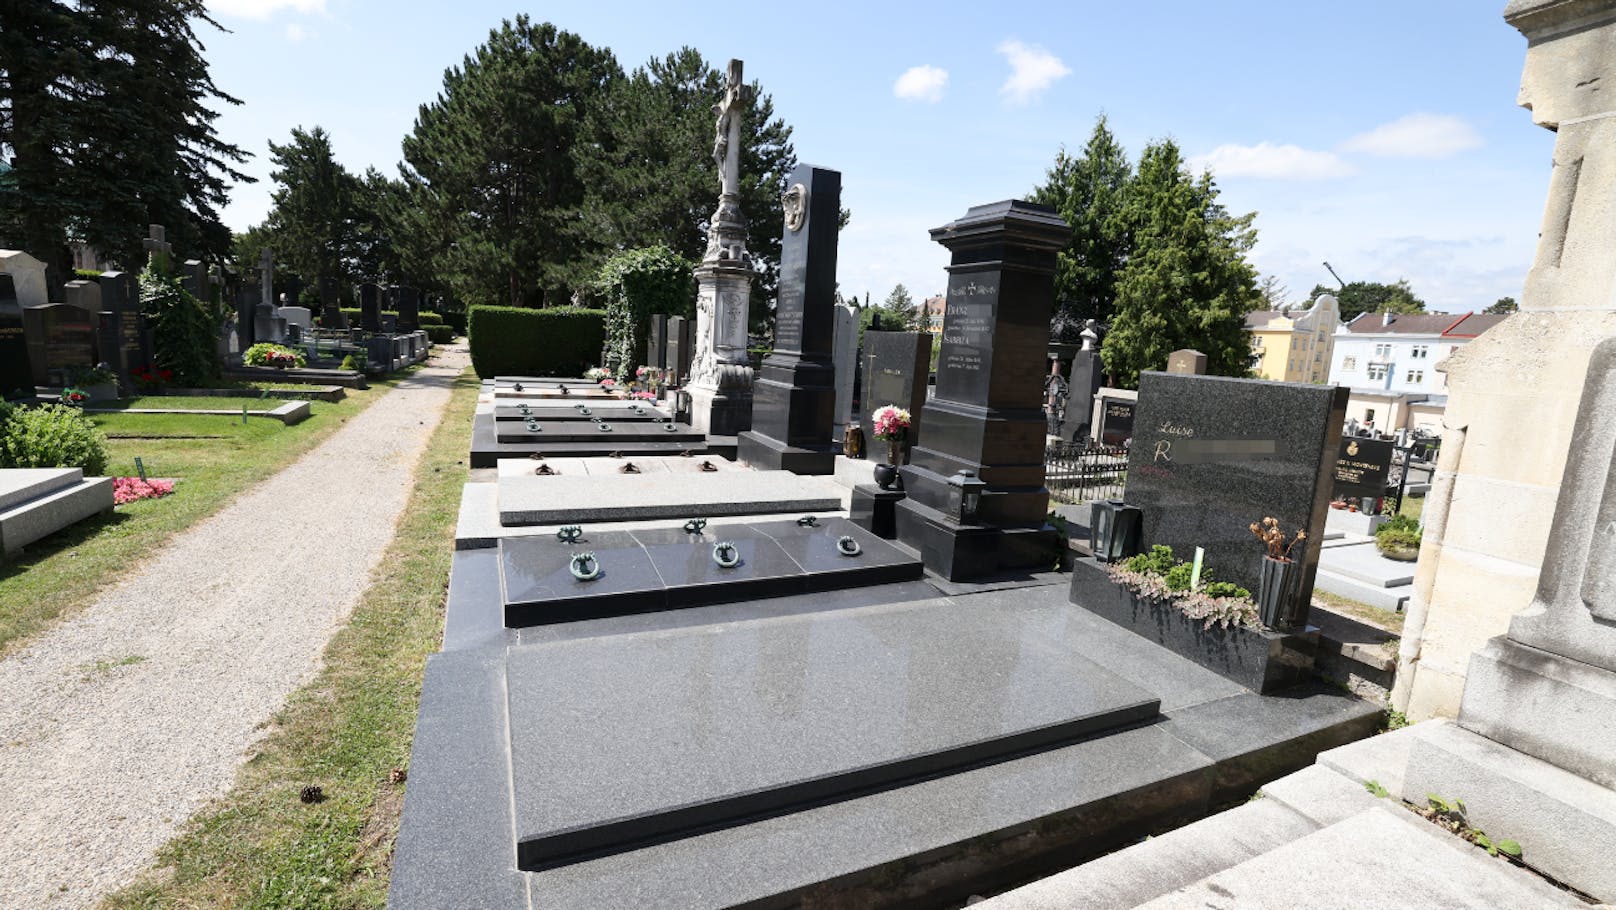 Frau besucht Friedhof und wird brutal attackiert